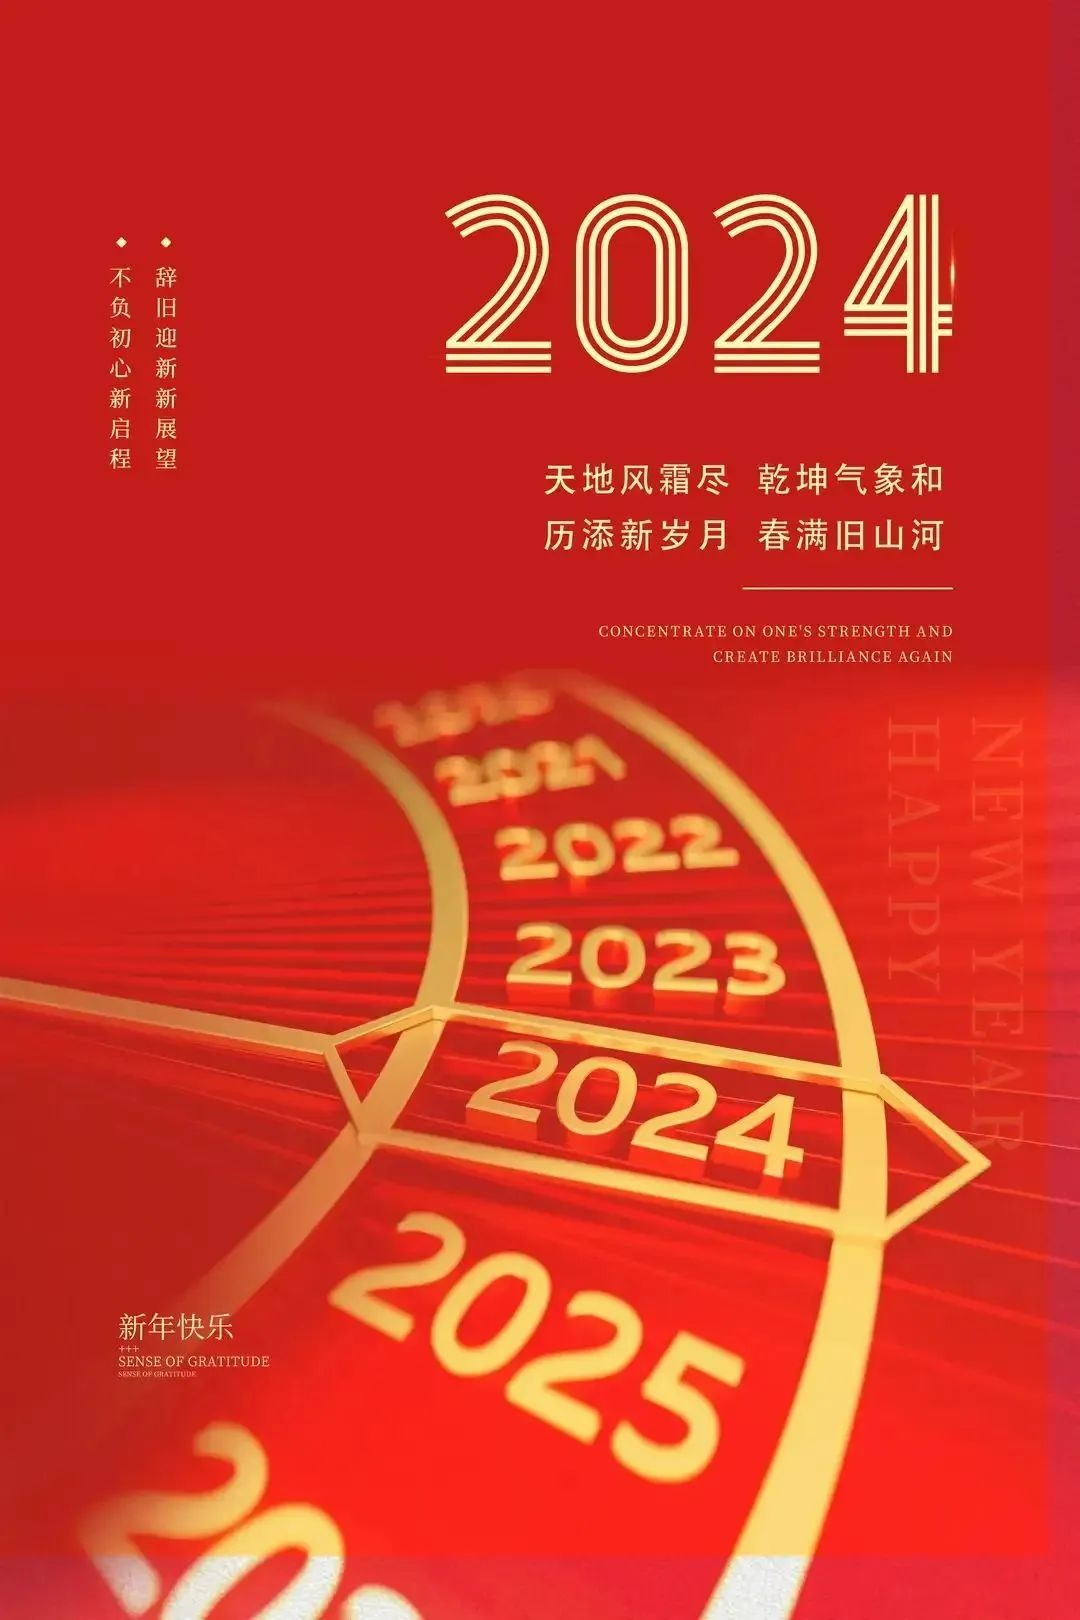 金诚携全体员工恭祝全球华人2024年新春愉快，龙年吉祥，万事如意